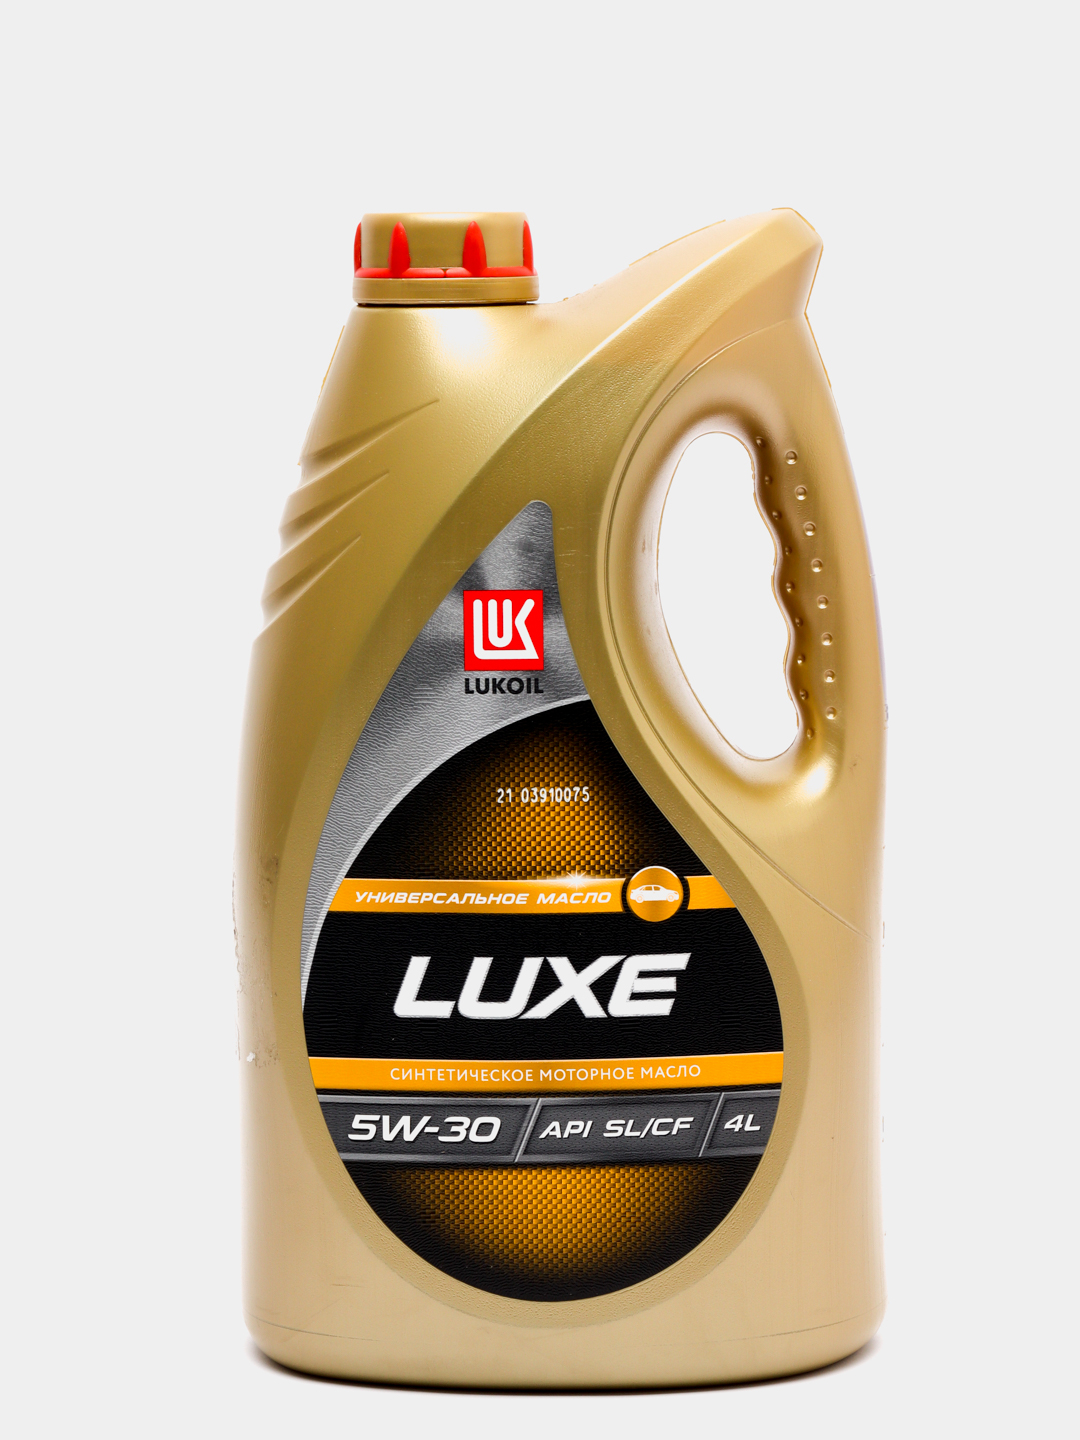  Лукойл Люкс синтетика 5w-30, Lukoil Luxe за 691 ₽  в .